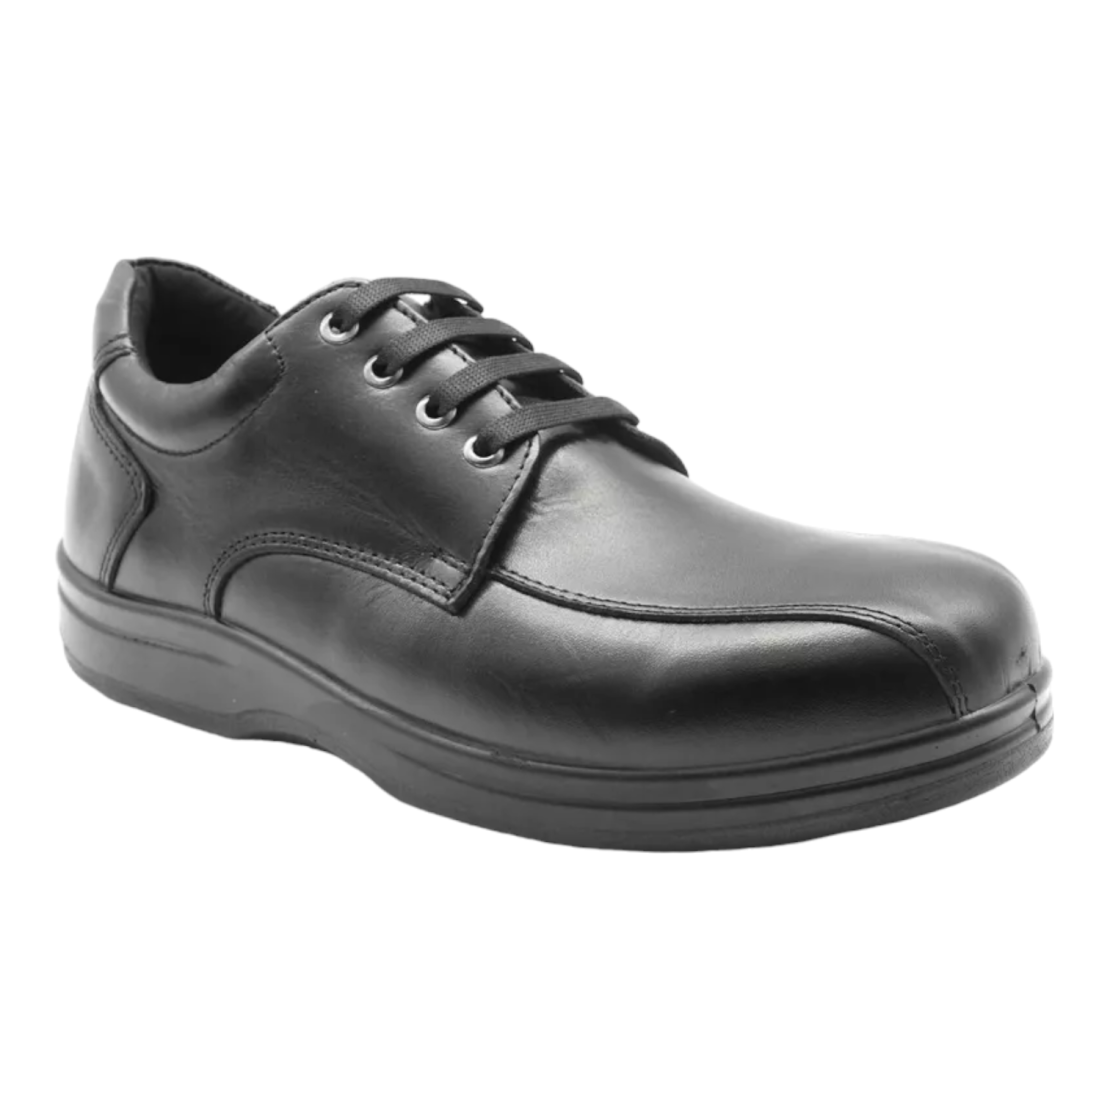 Absolute Comfort נעליים רחבות לגברים 6E דגם 3410